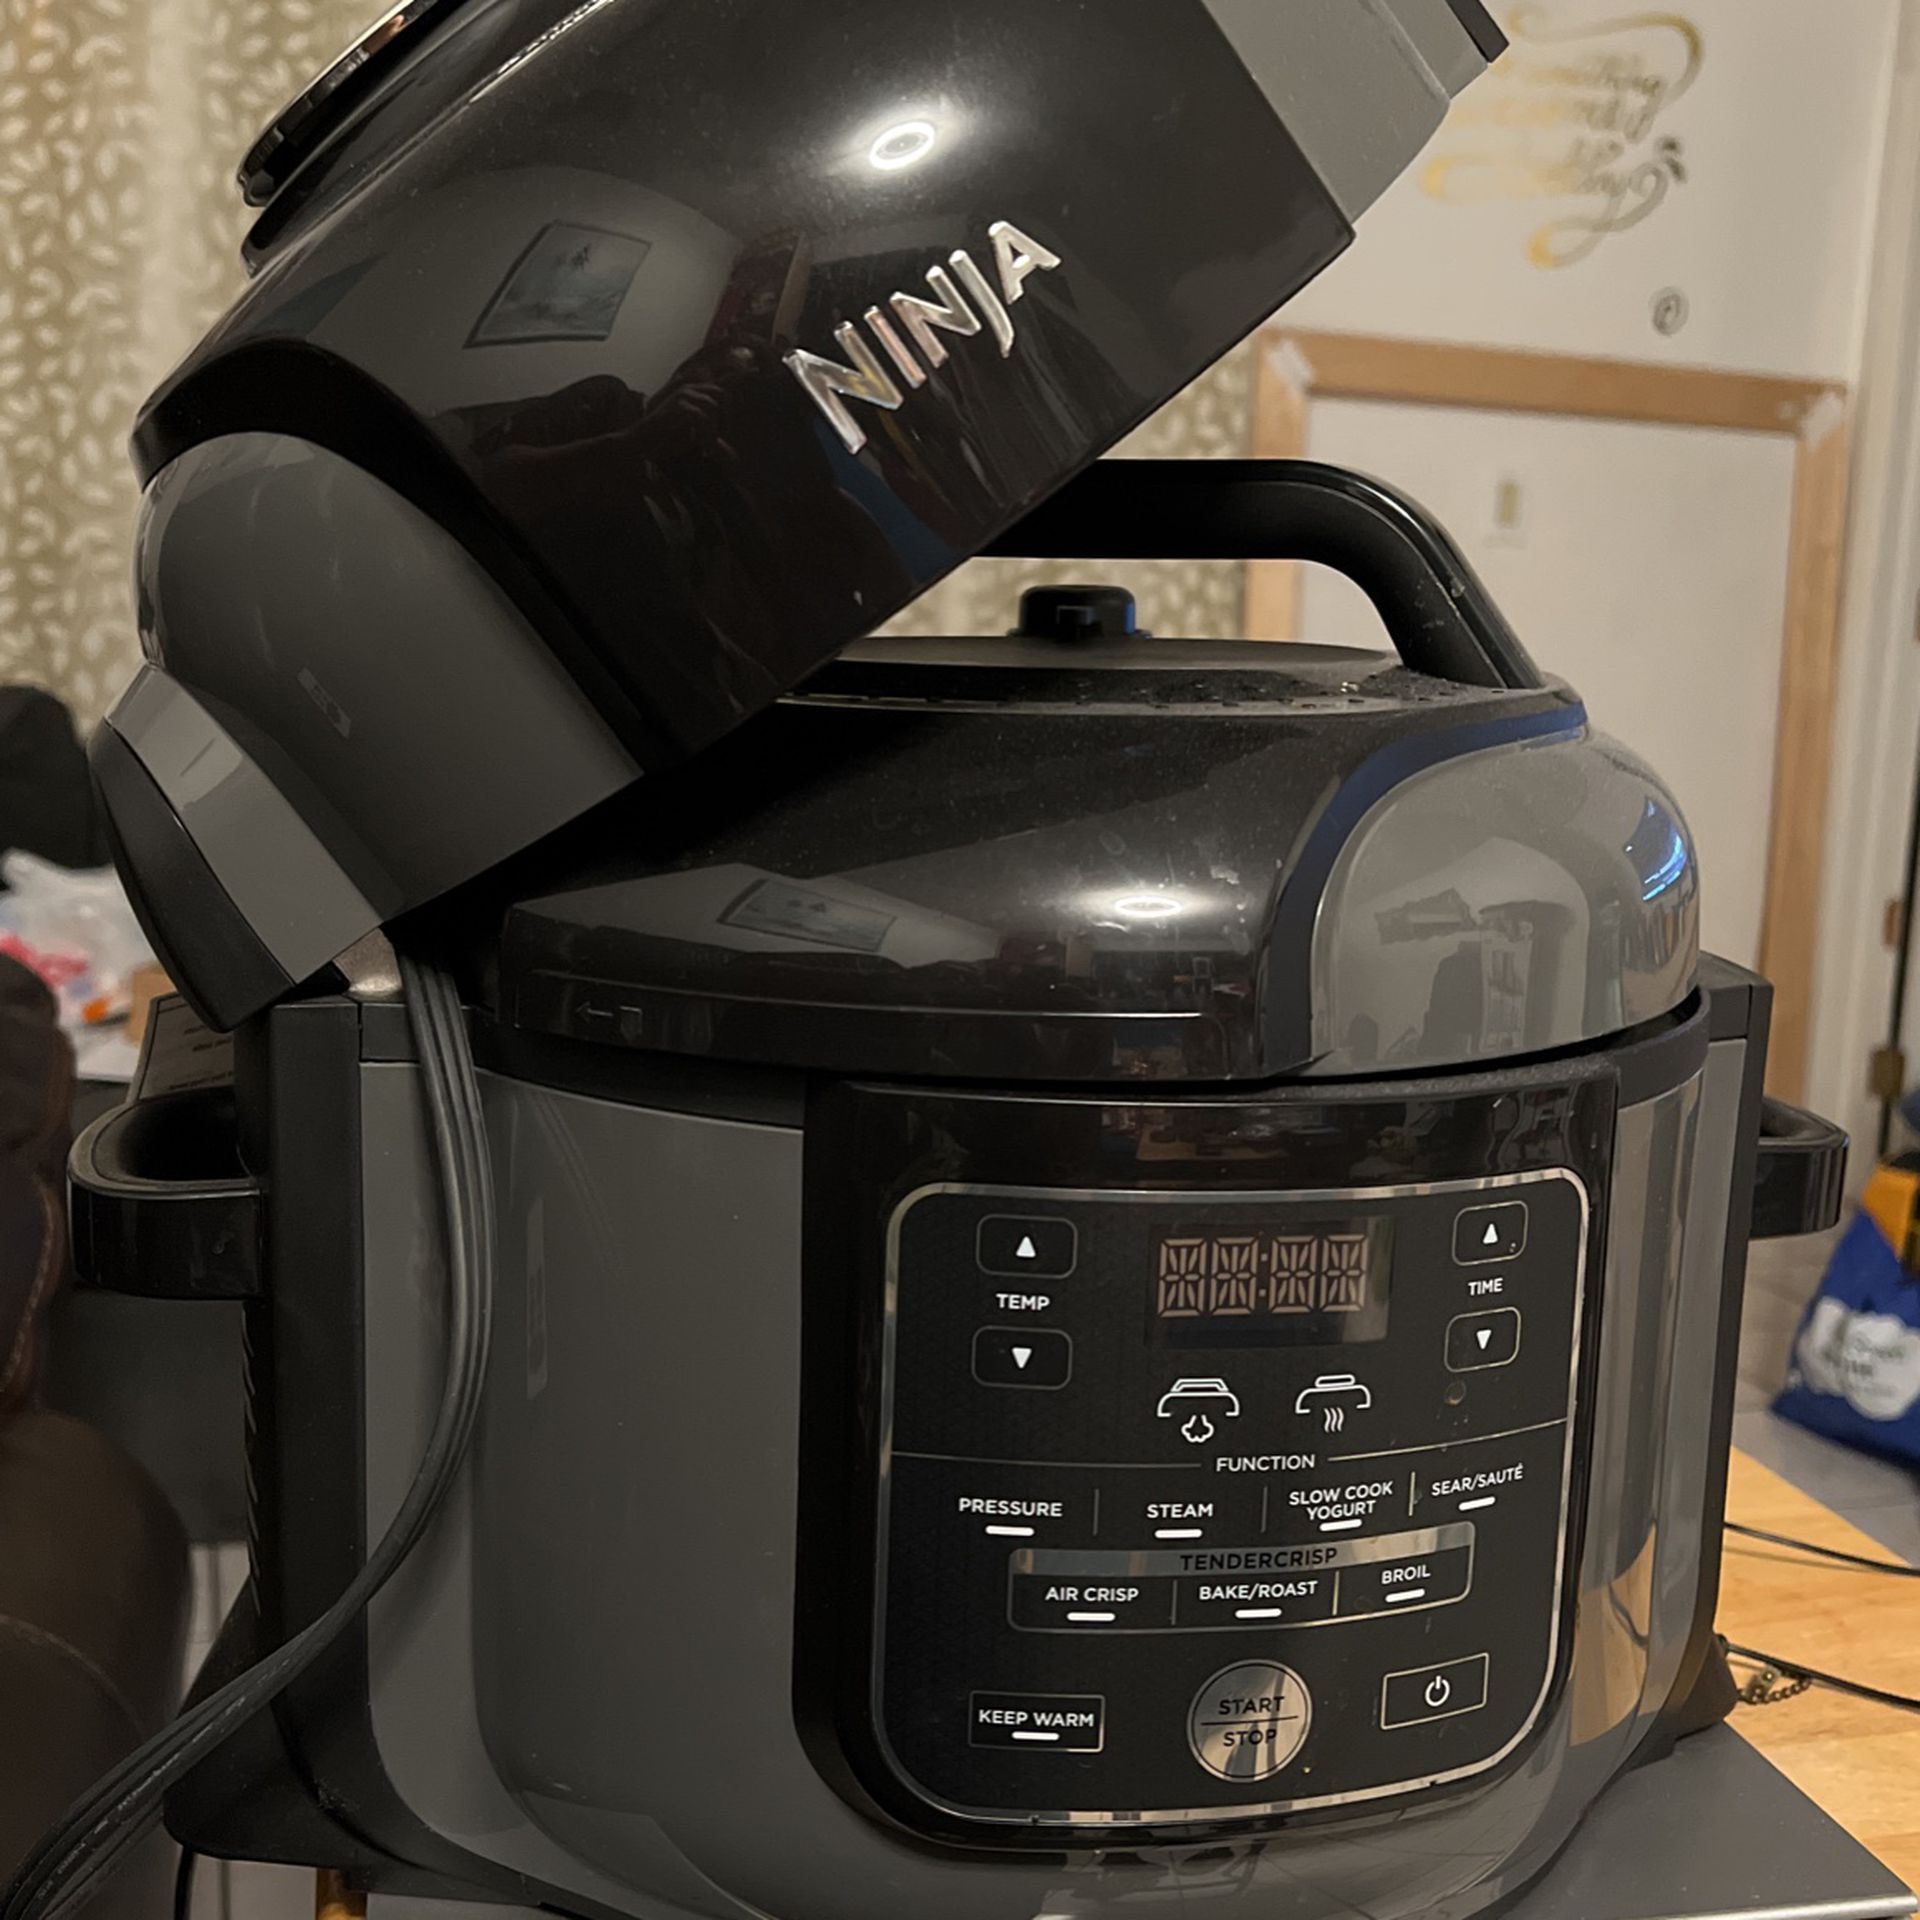 Ninja Foodi 6.5-qt., The Pressure Cooker that Crisps